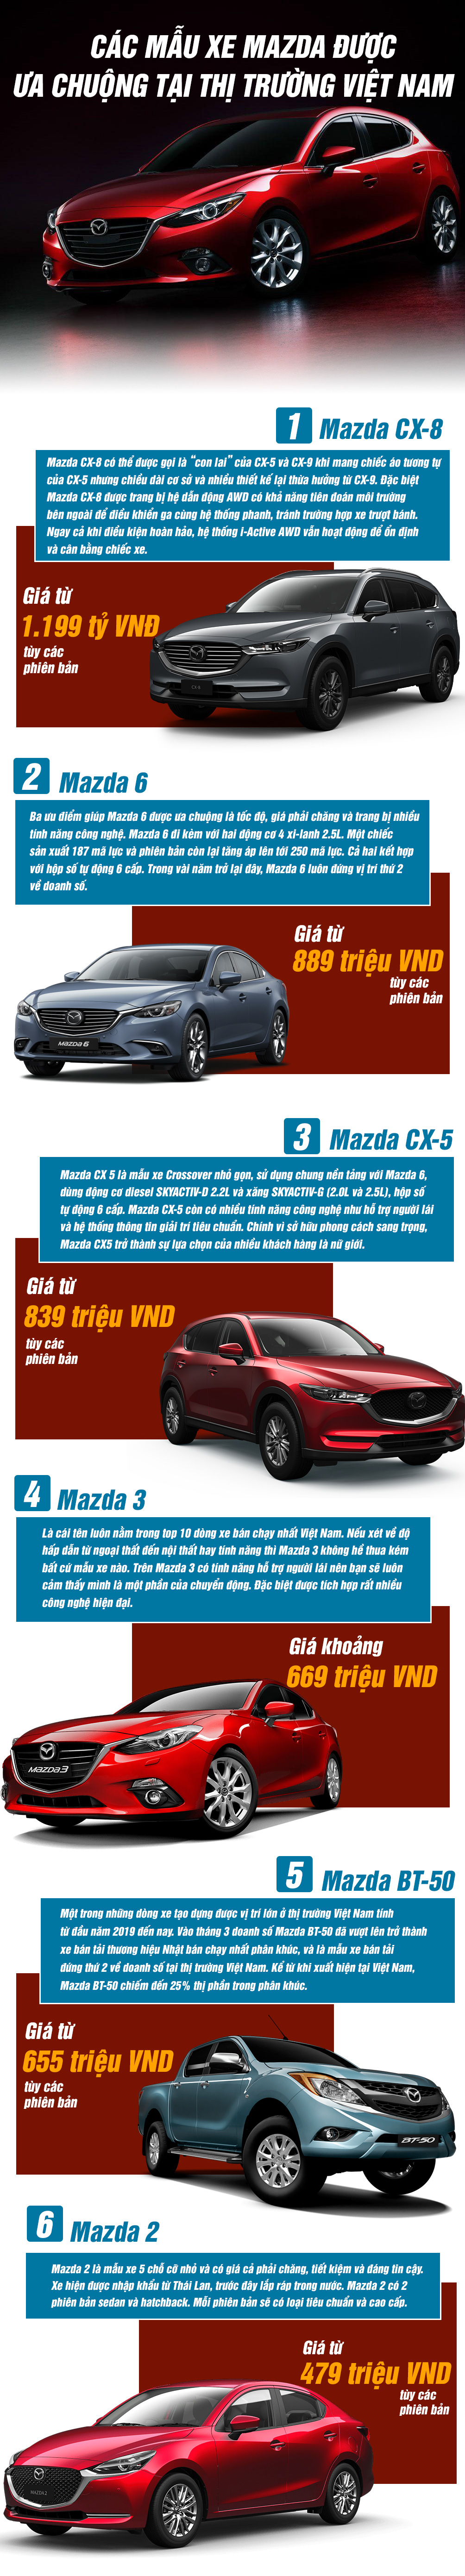 Các mẫu xe Mazda nào được ưa chuộng tại thị trường Việt Nam? - 1